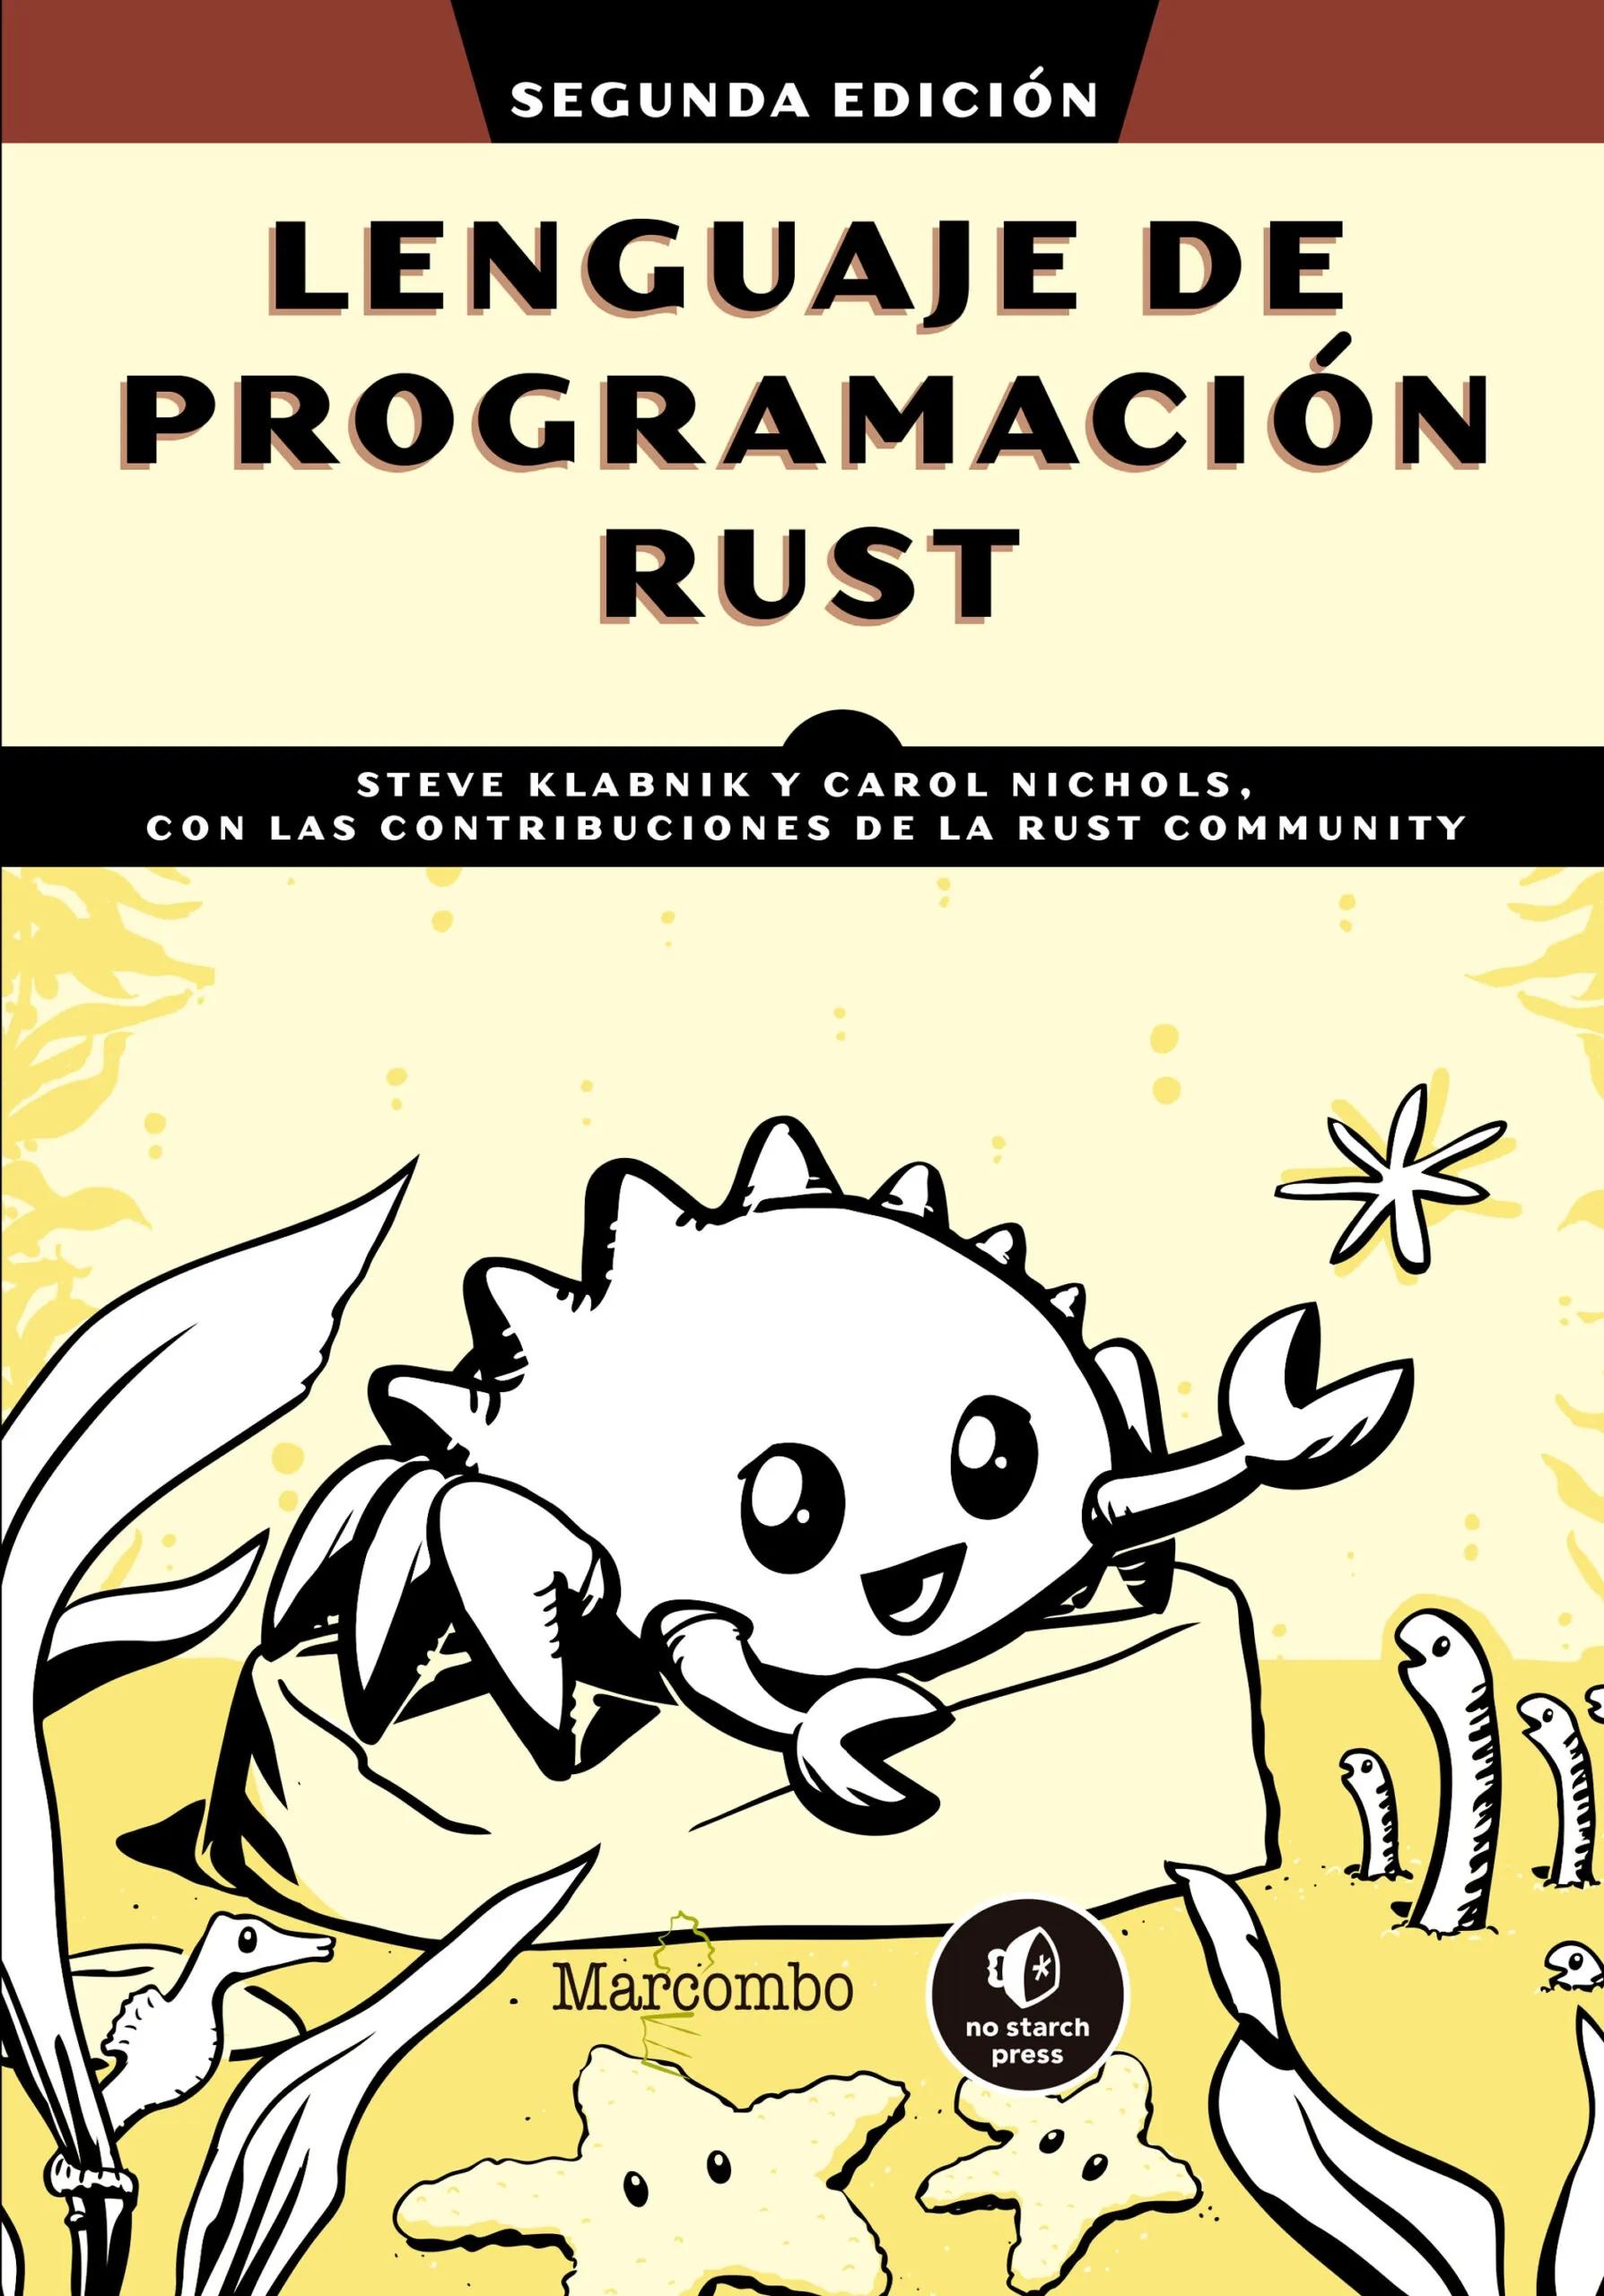 Lenguaje de programación Rust "Con contribuciones de la Rust Community"